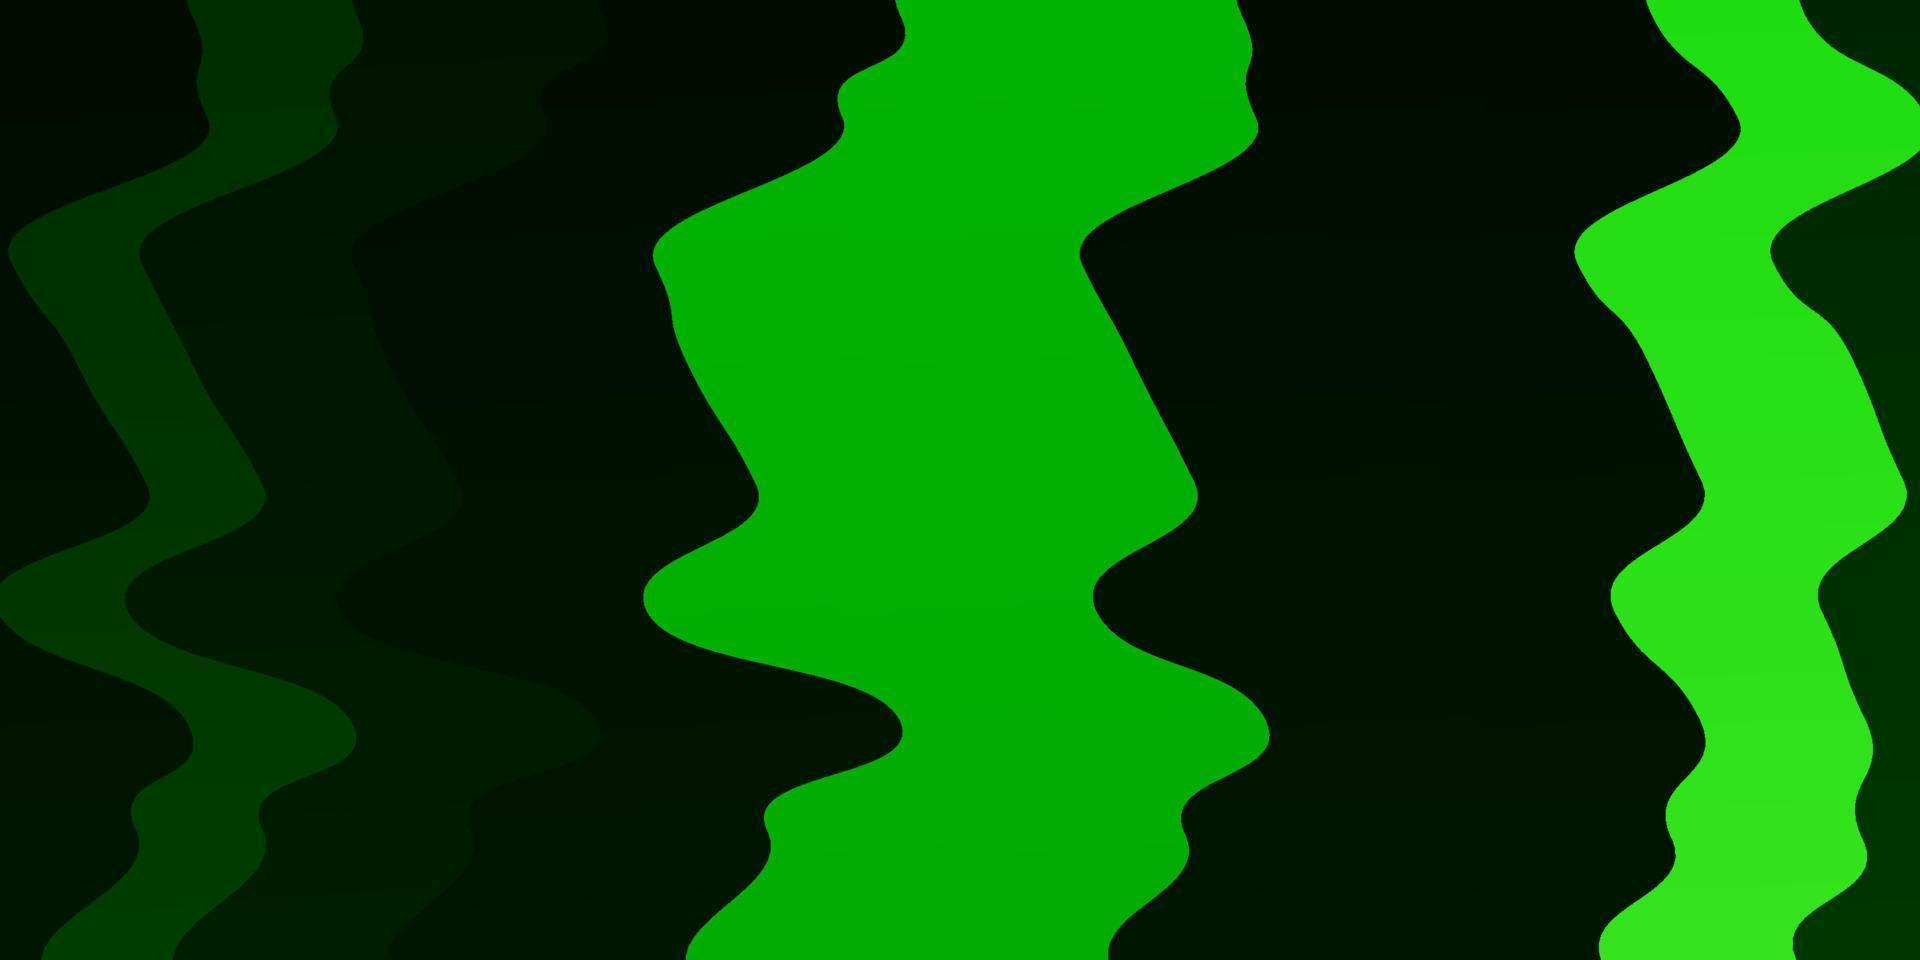 sfondo vettoriale verde chiaro con linee piegate.